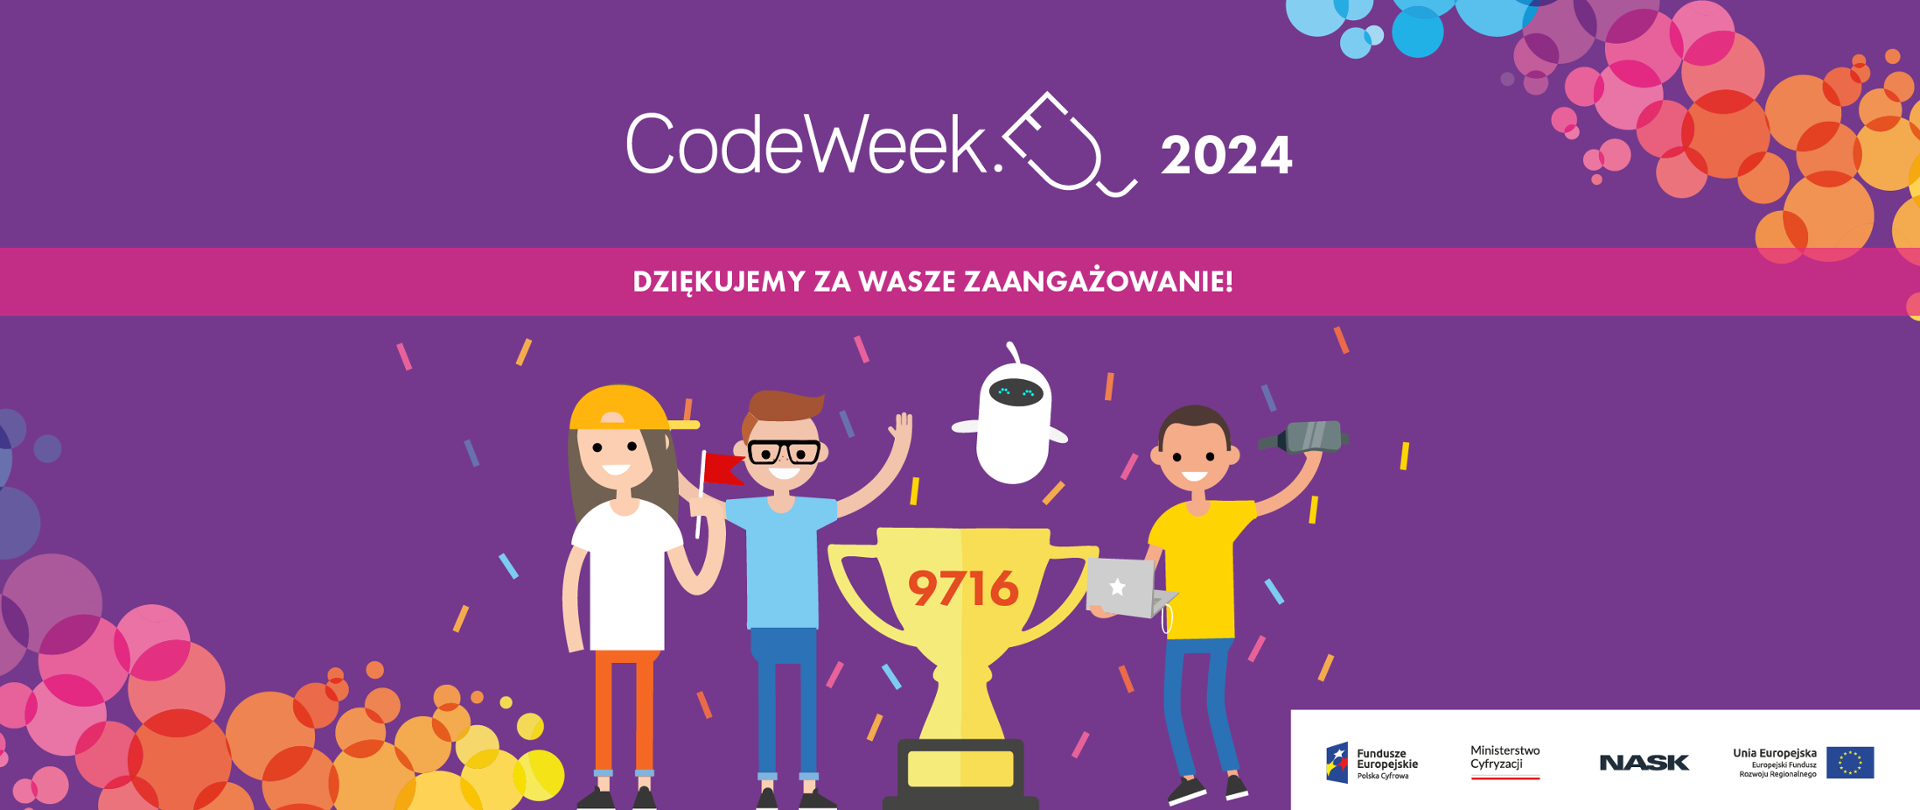 Grafika wektorowa przedstawiająca trzy postaci i puchar. Tekst: CodeWeek 2024. Dziękujemy za Wasze zaangażowanie!